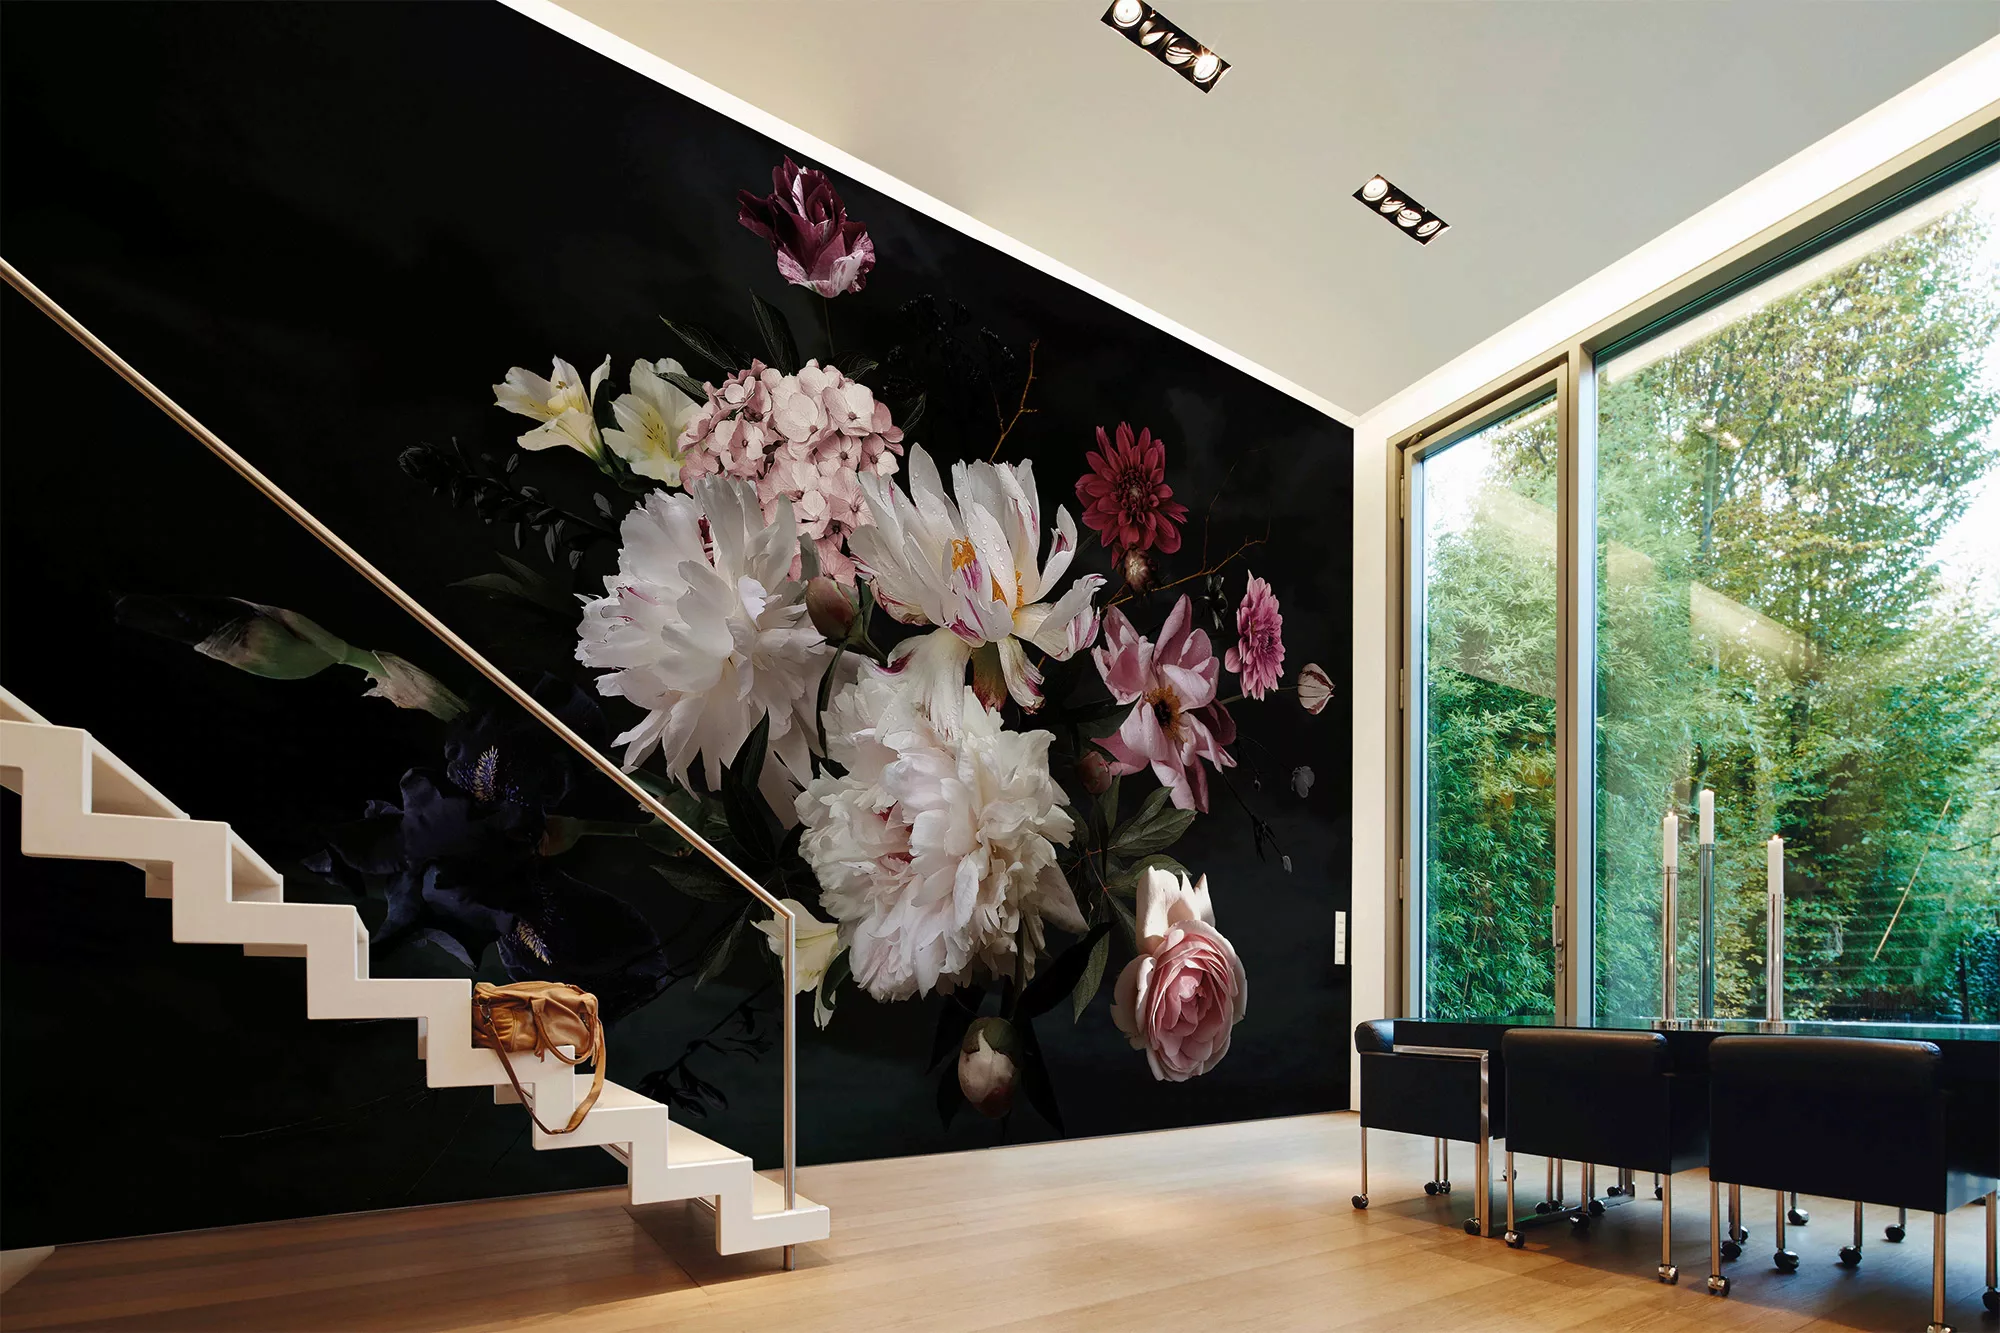 Fototapete Blumenbouquet Weiß Schwarz 3,50 m x 2,55 m FSC® günstig online kaufen